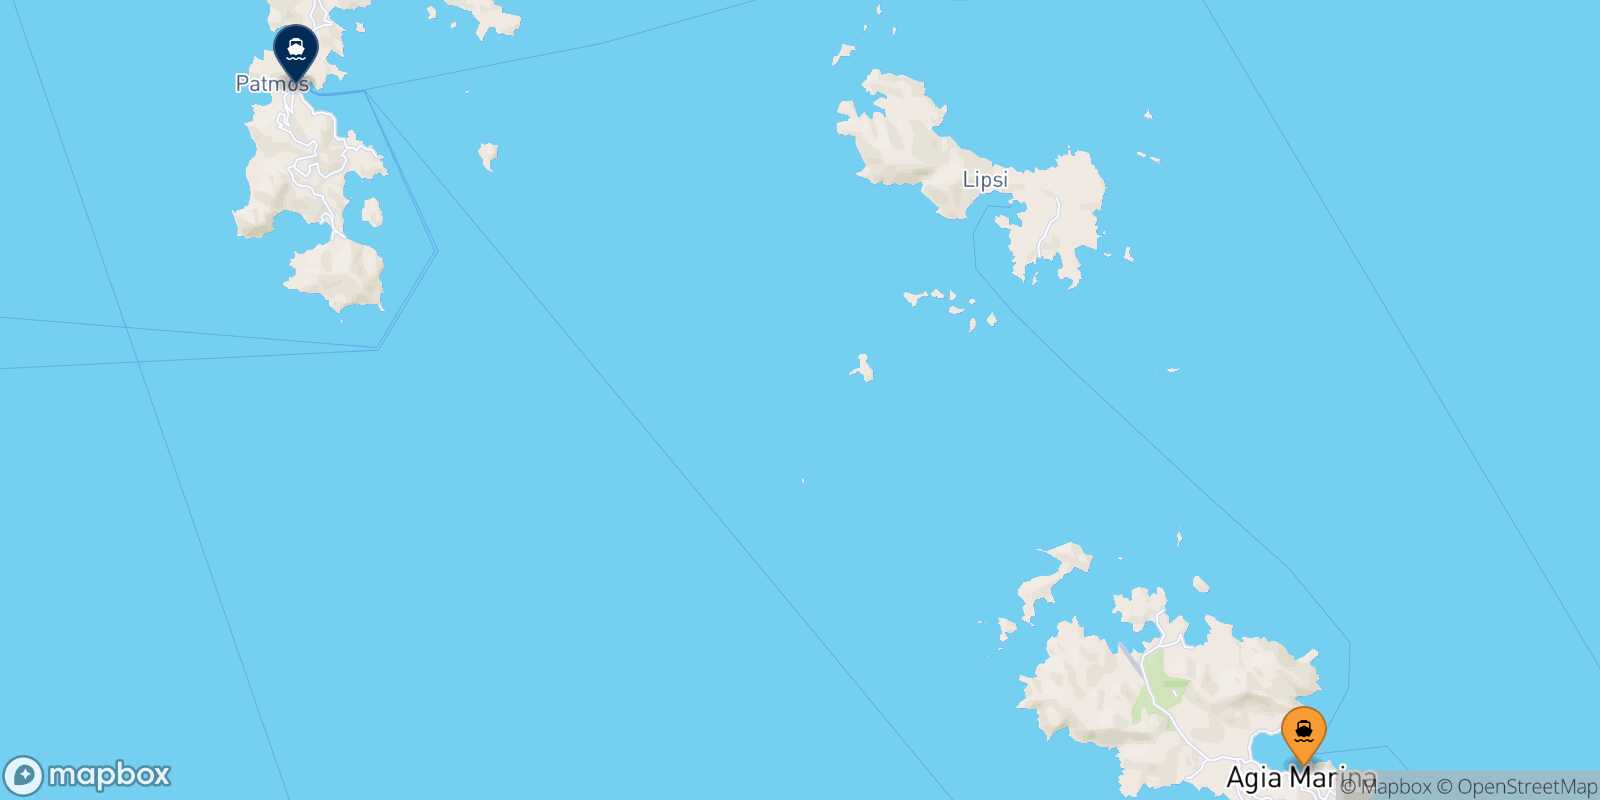 Mapa de la ruta Leros Patmos